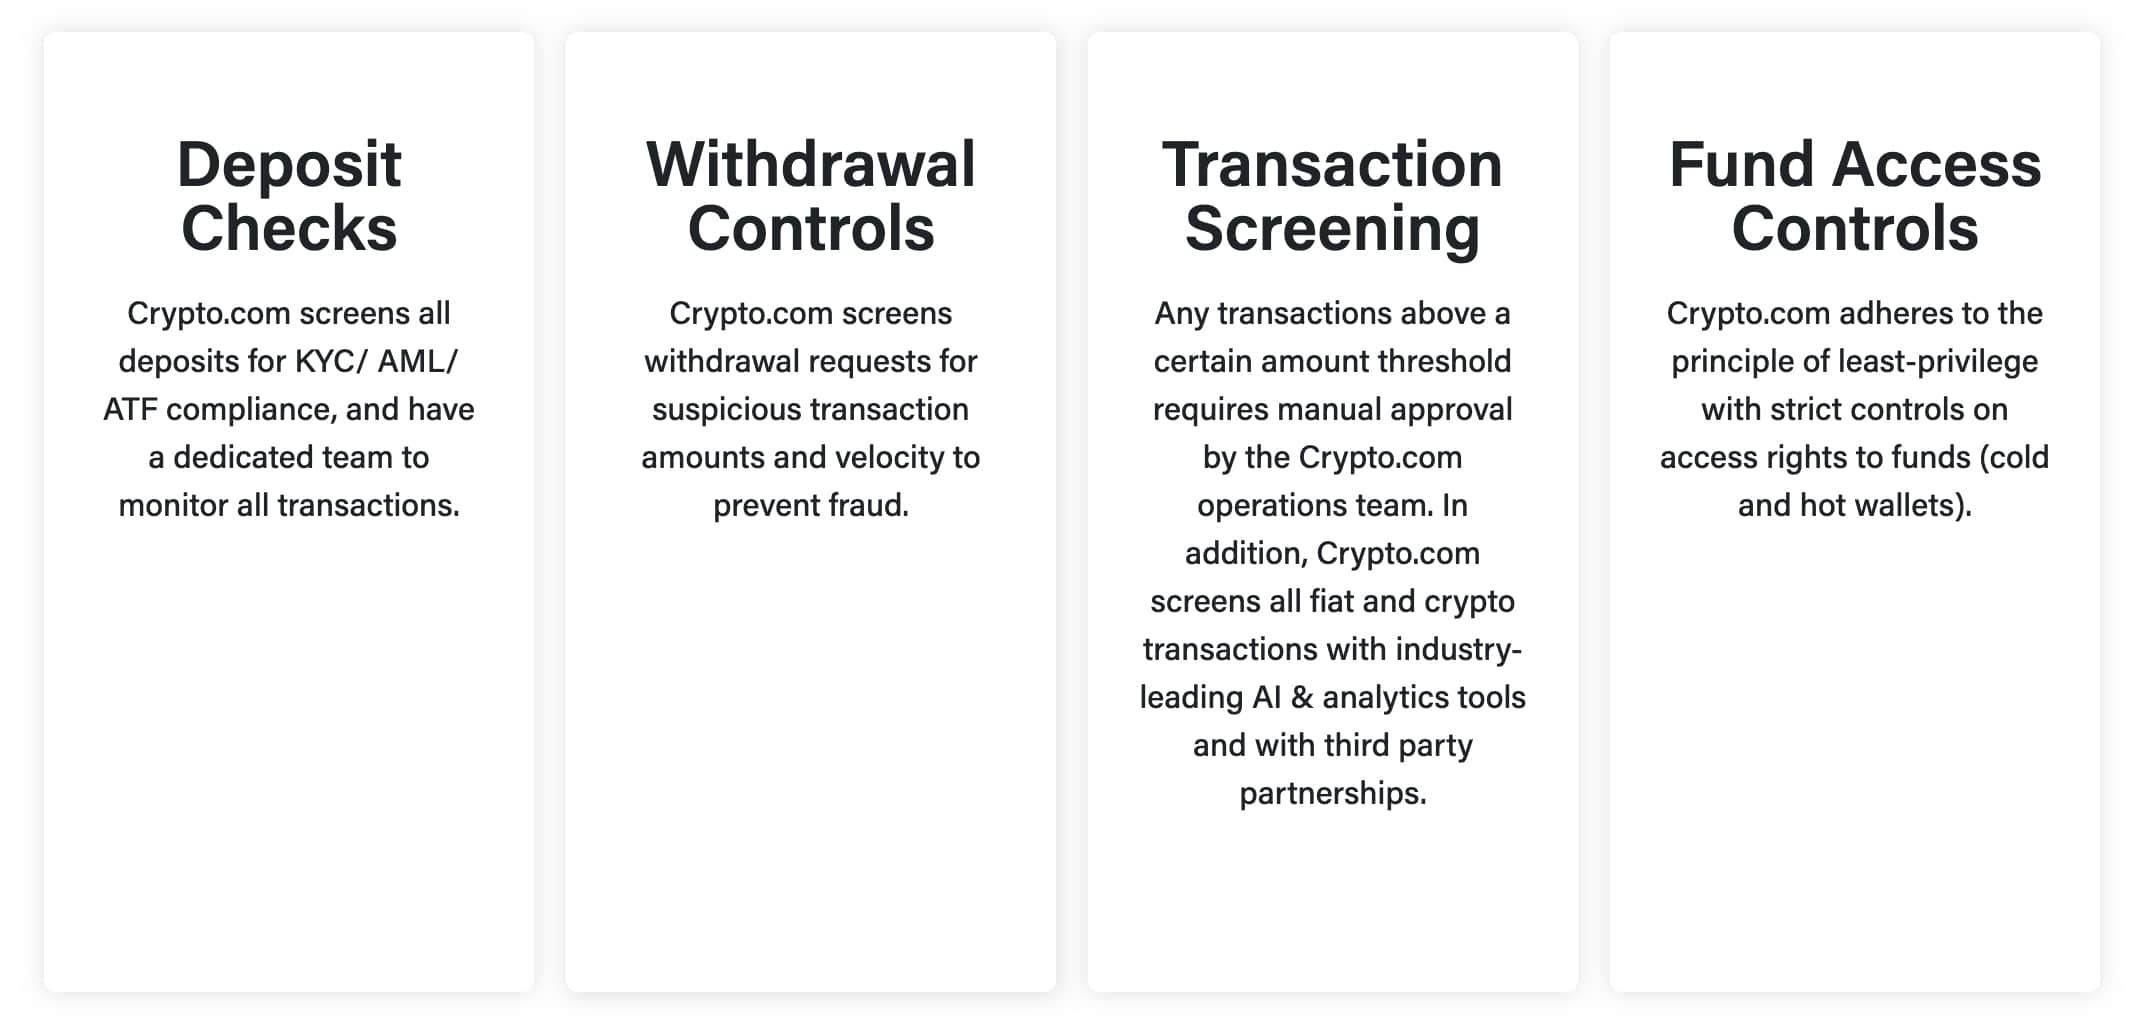 Cum sa cumperi Bitcoin de pe Bitstamp - Ghid Bitstamp - Cryptoghidul